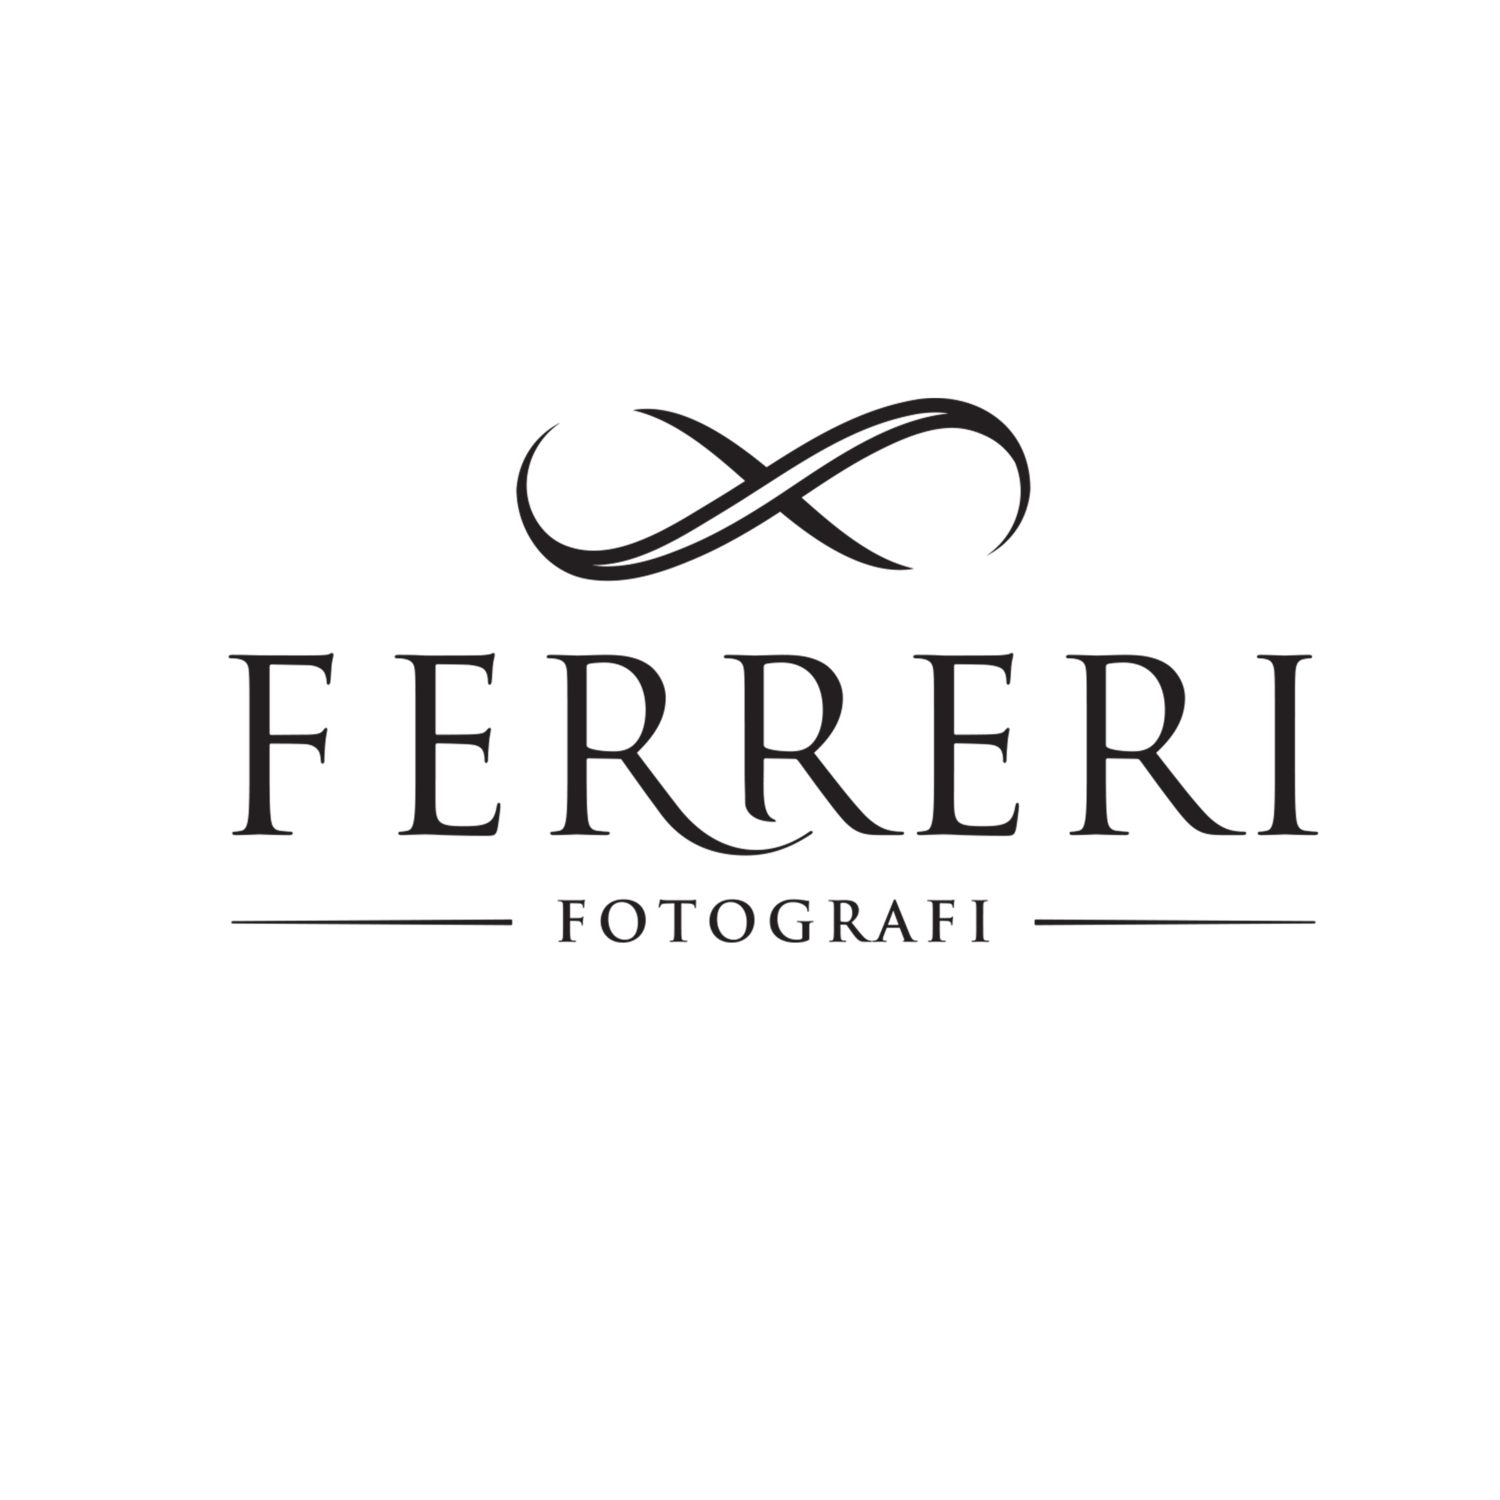 www.ferrerifotografi.it